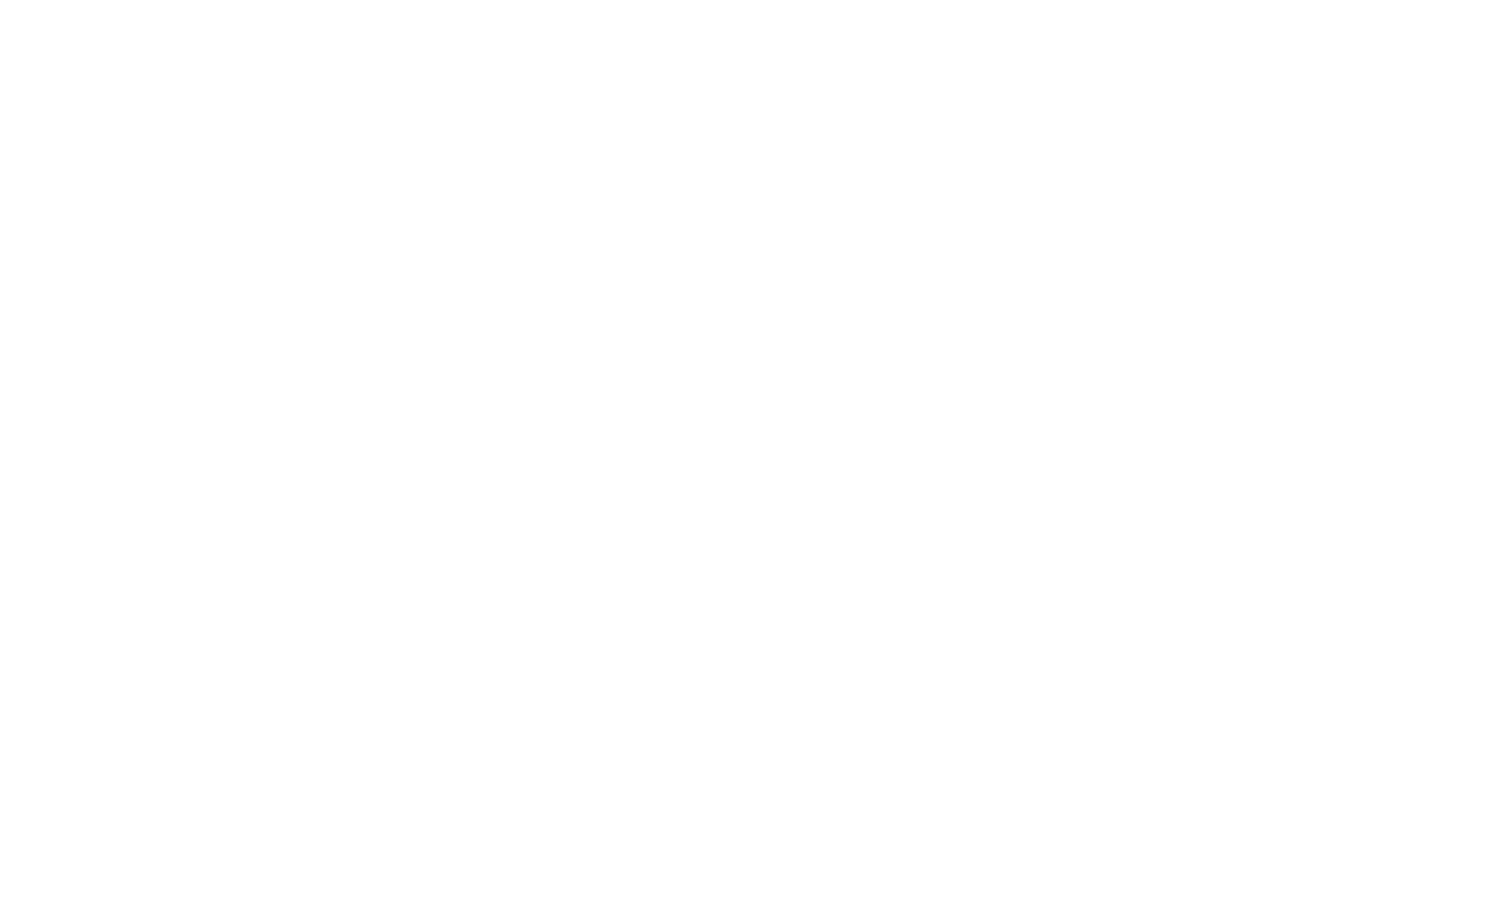 Jewish Community Action